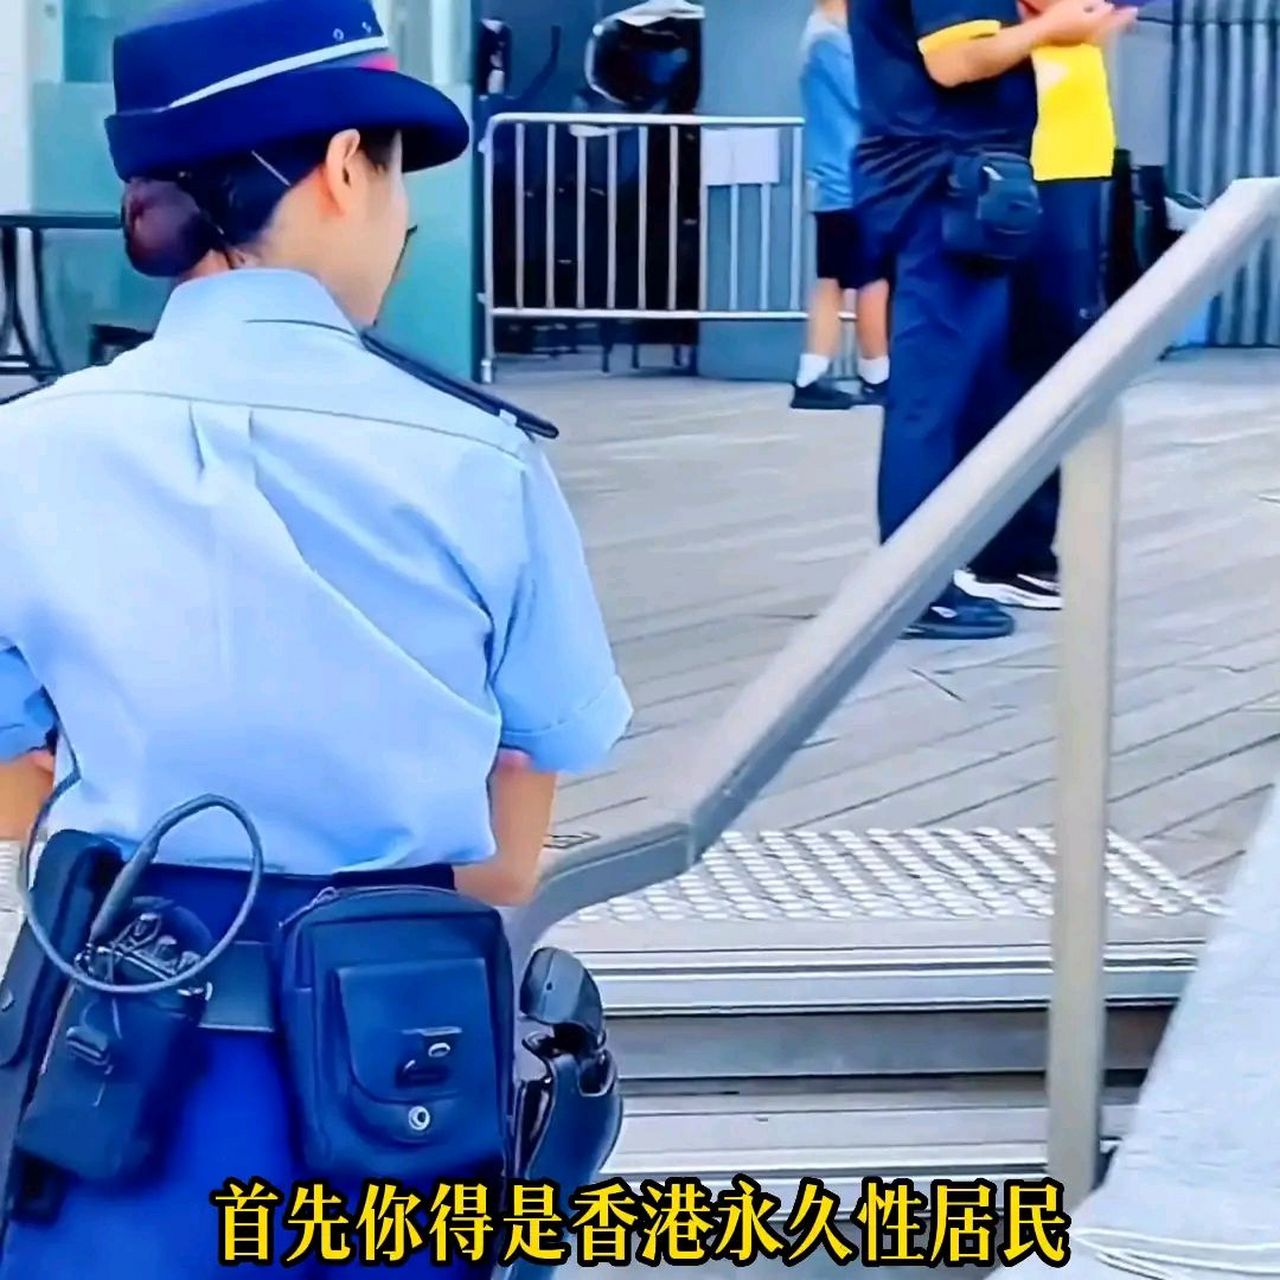 香港警察月薪有多高? 你们猜在香港当阿sir一个月能赚多少钱?